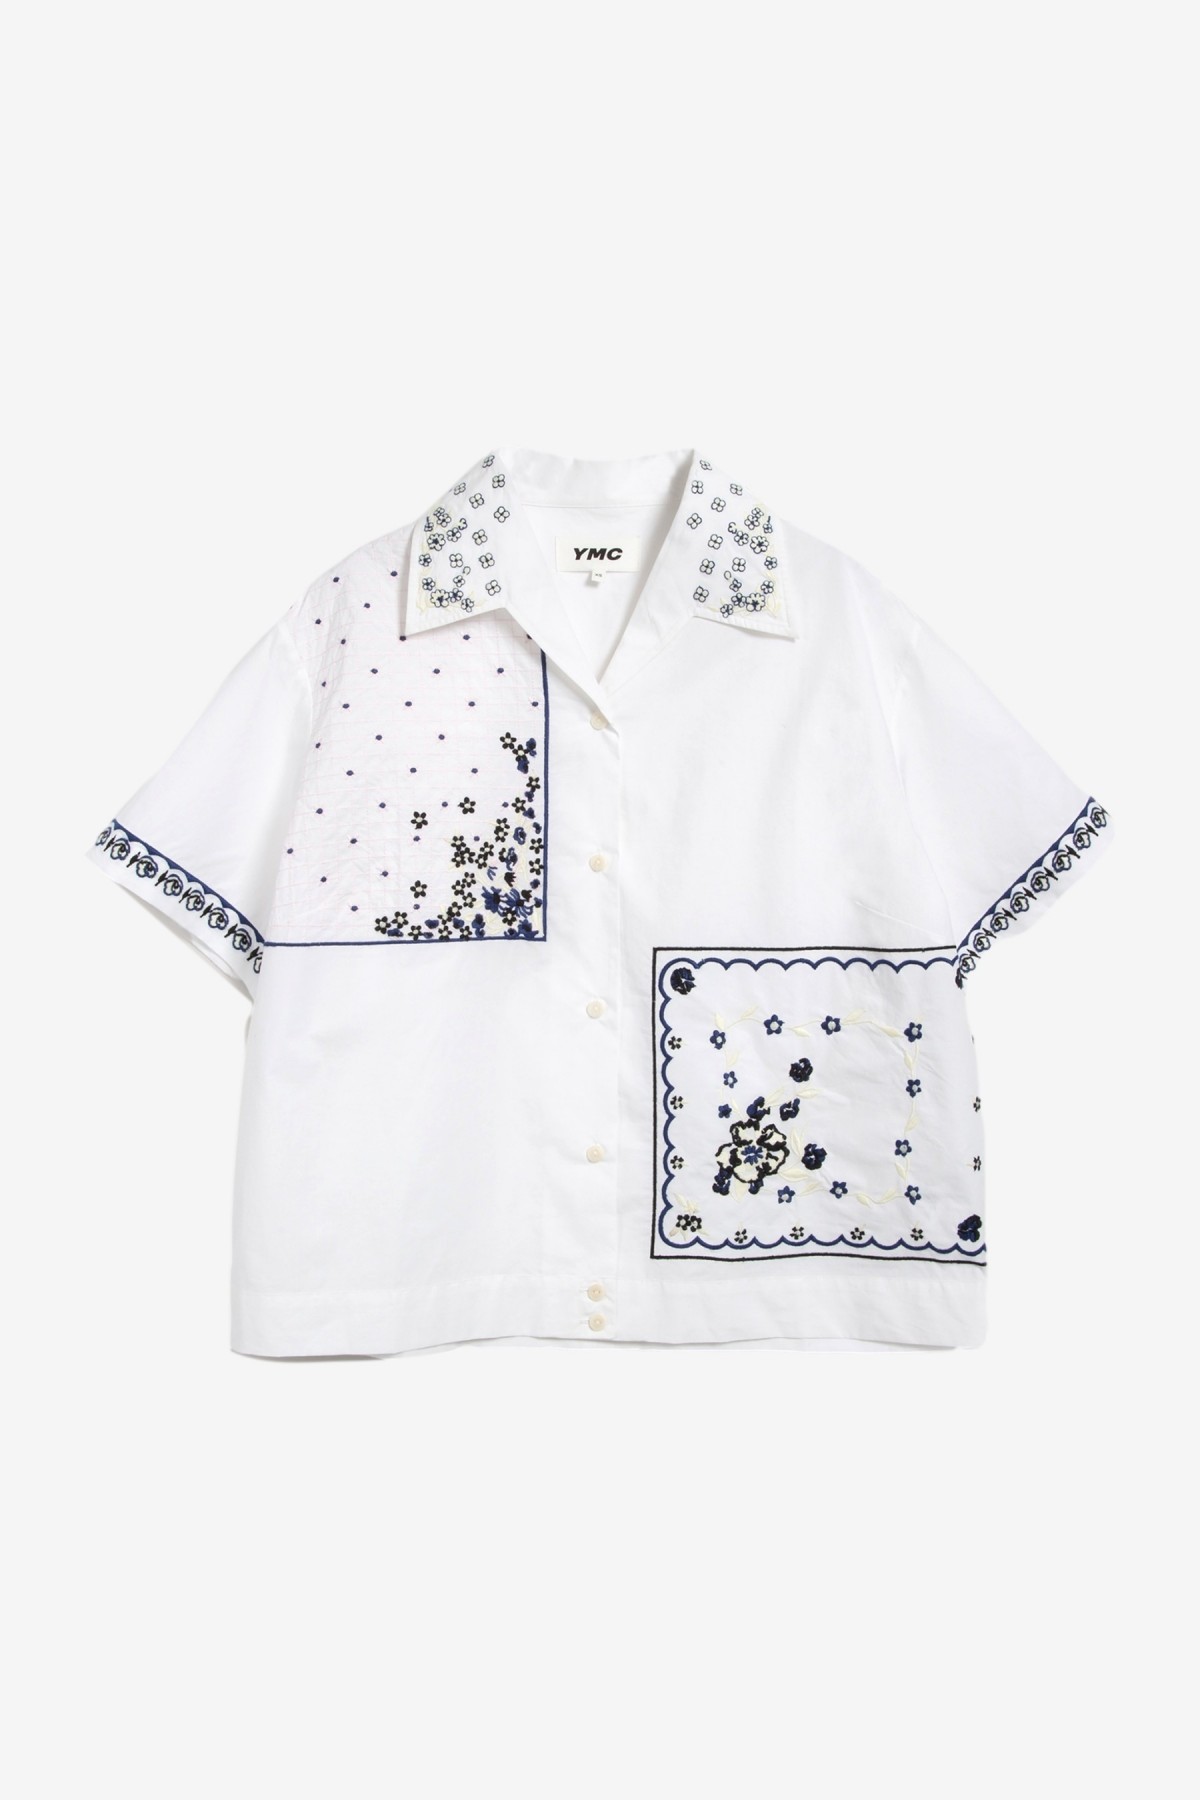 YMC You Must Create Wanda Shirt in White